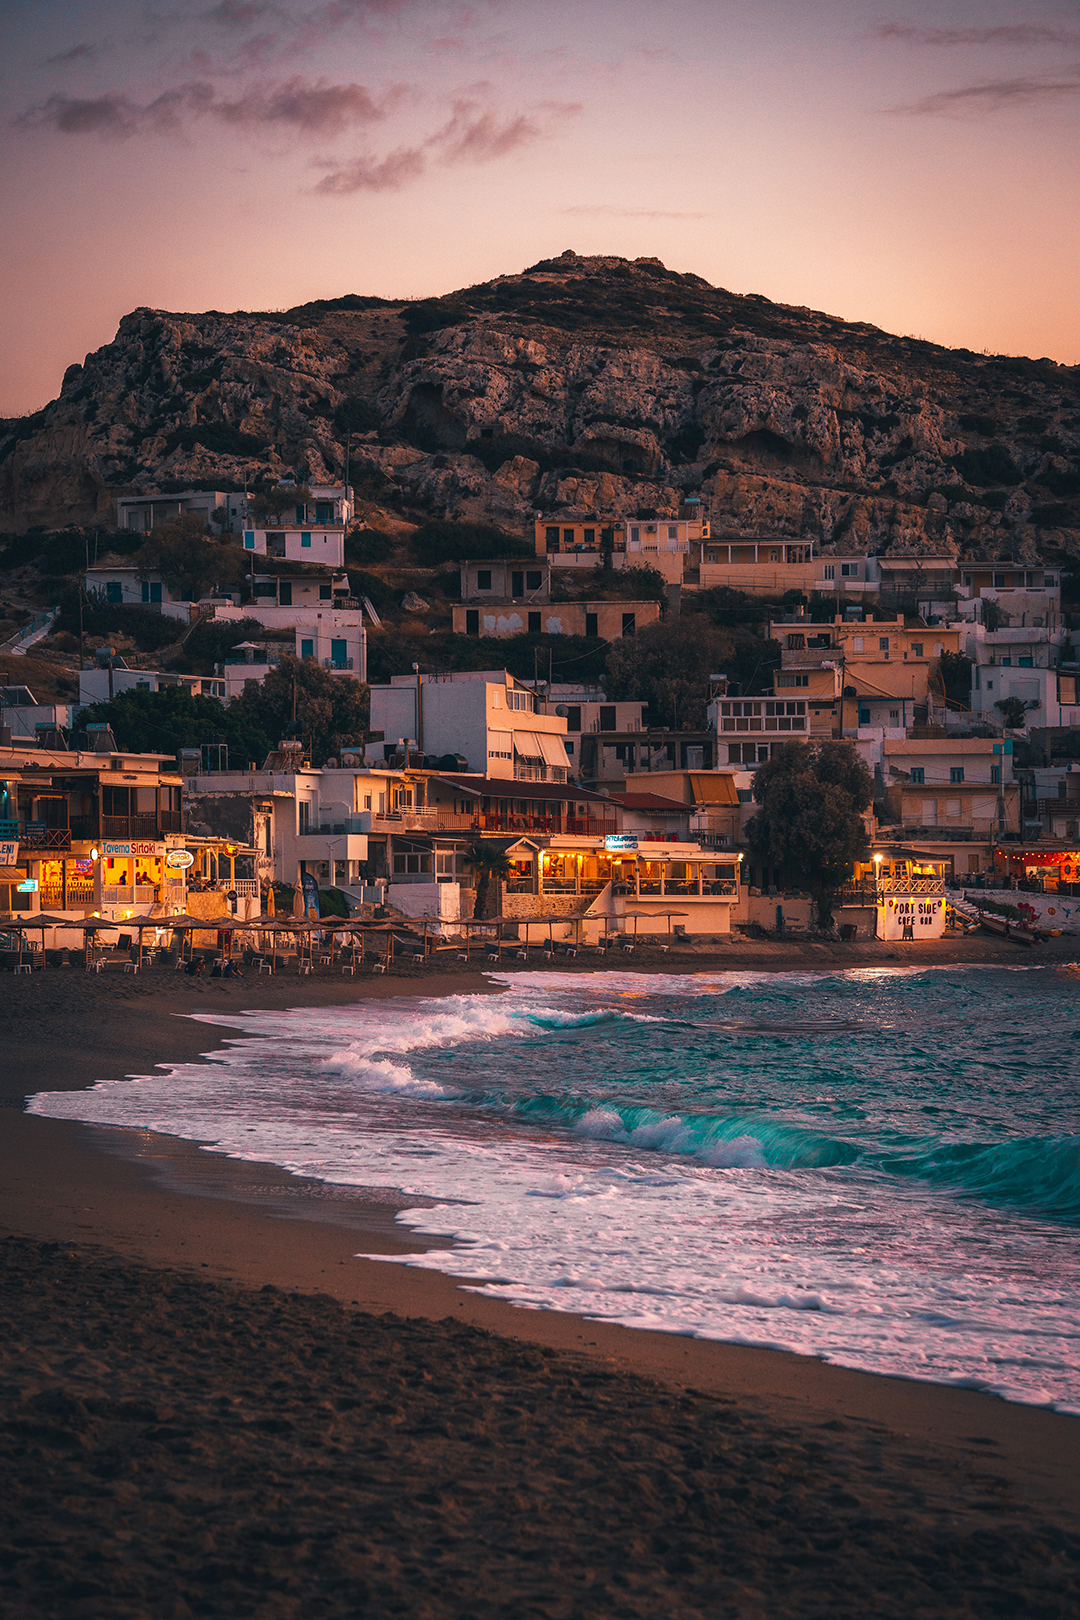 Popotniski_nasveti_za_potovanje_v_Grcijo_-_Travel_tips_for_traveling_to_Greece_-_Photo_by_Tobias_Reich_on_Unsplash.jpg